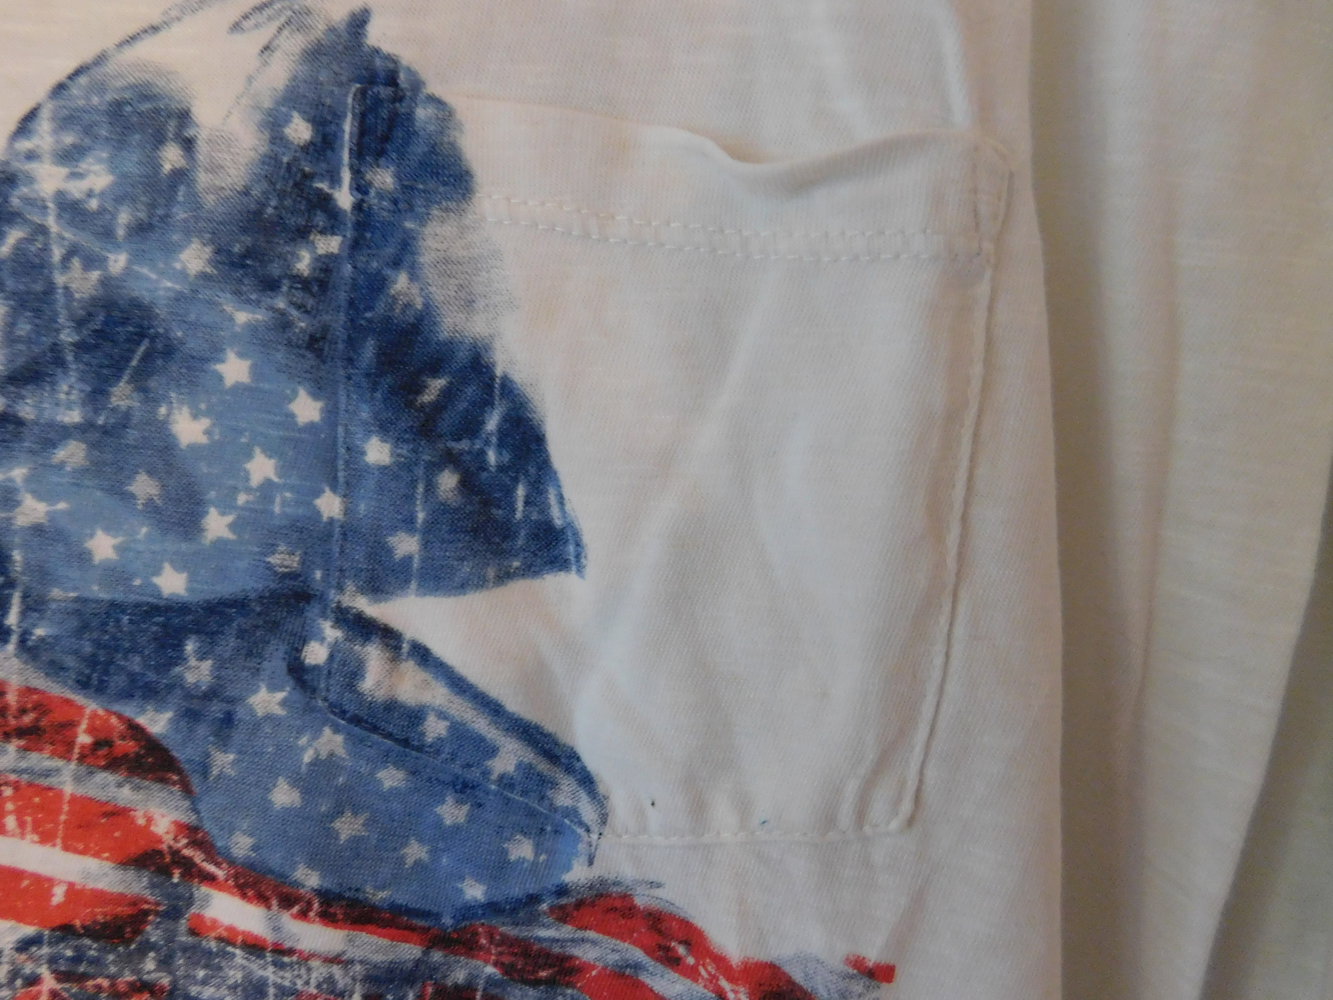 schickes weißes Shirt mit amerikanischer Schleife trendy hipster tumblr